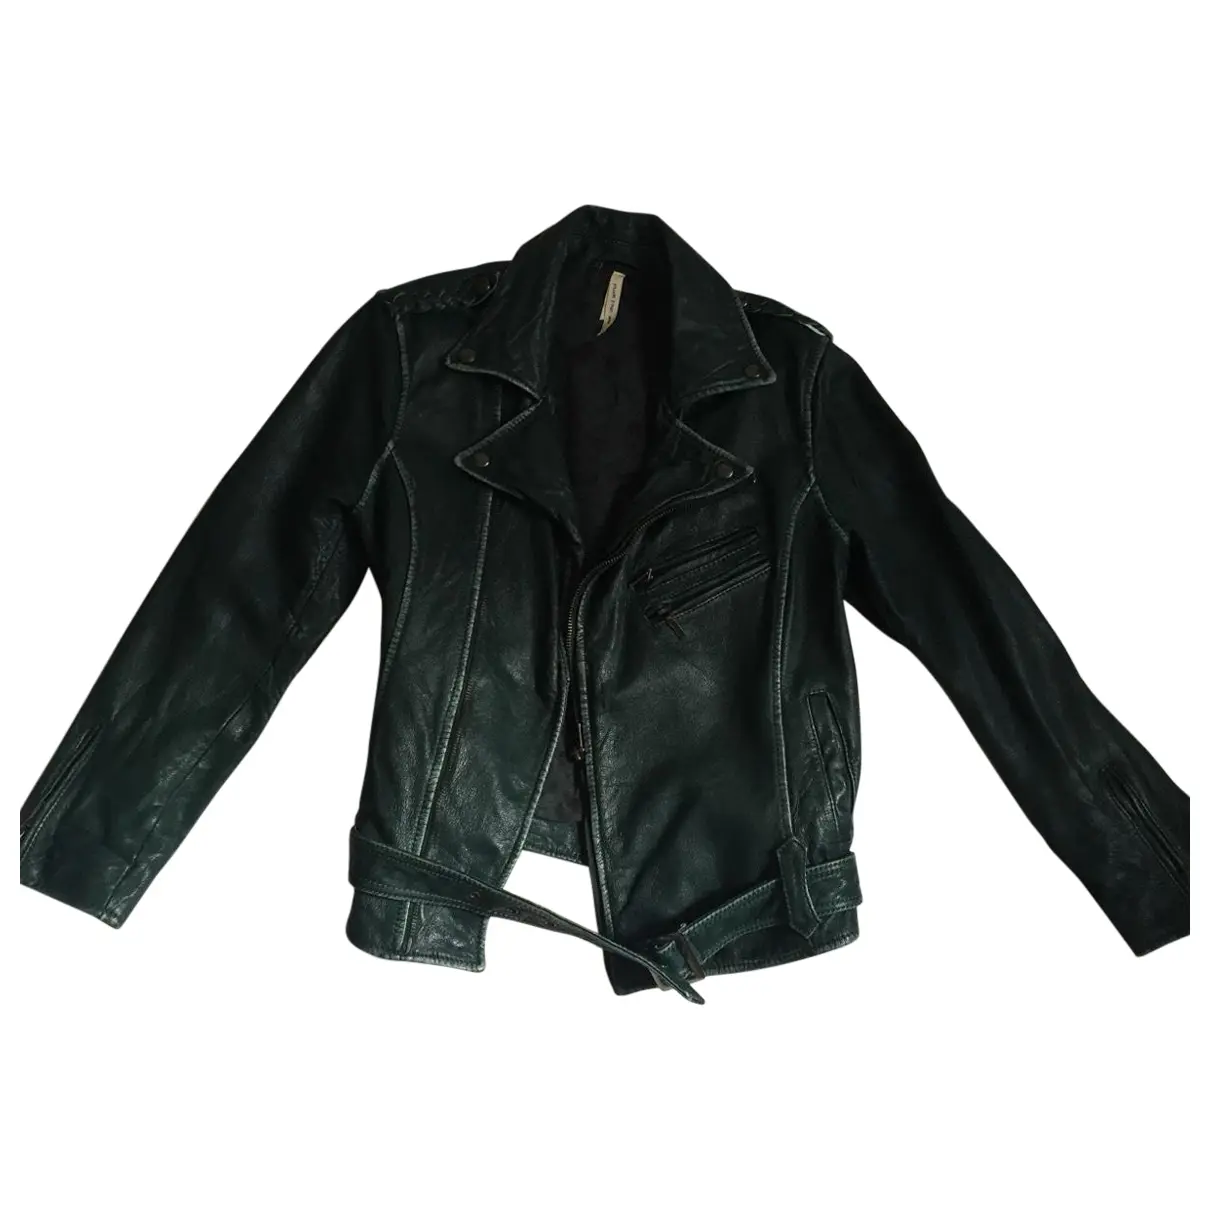 Green leather Jacket jacket Leon & Harper